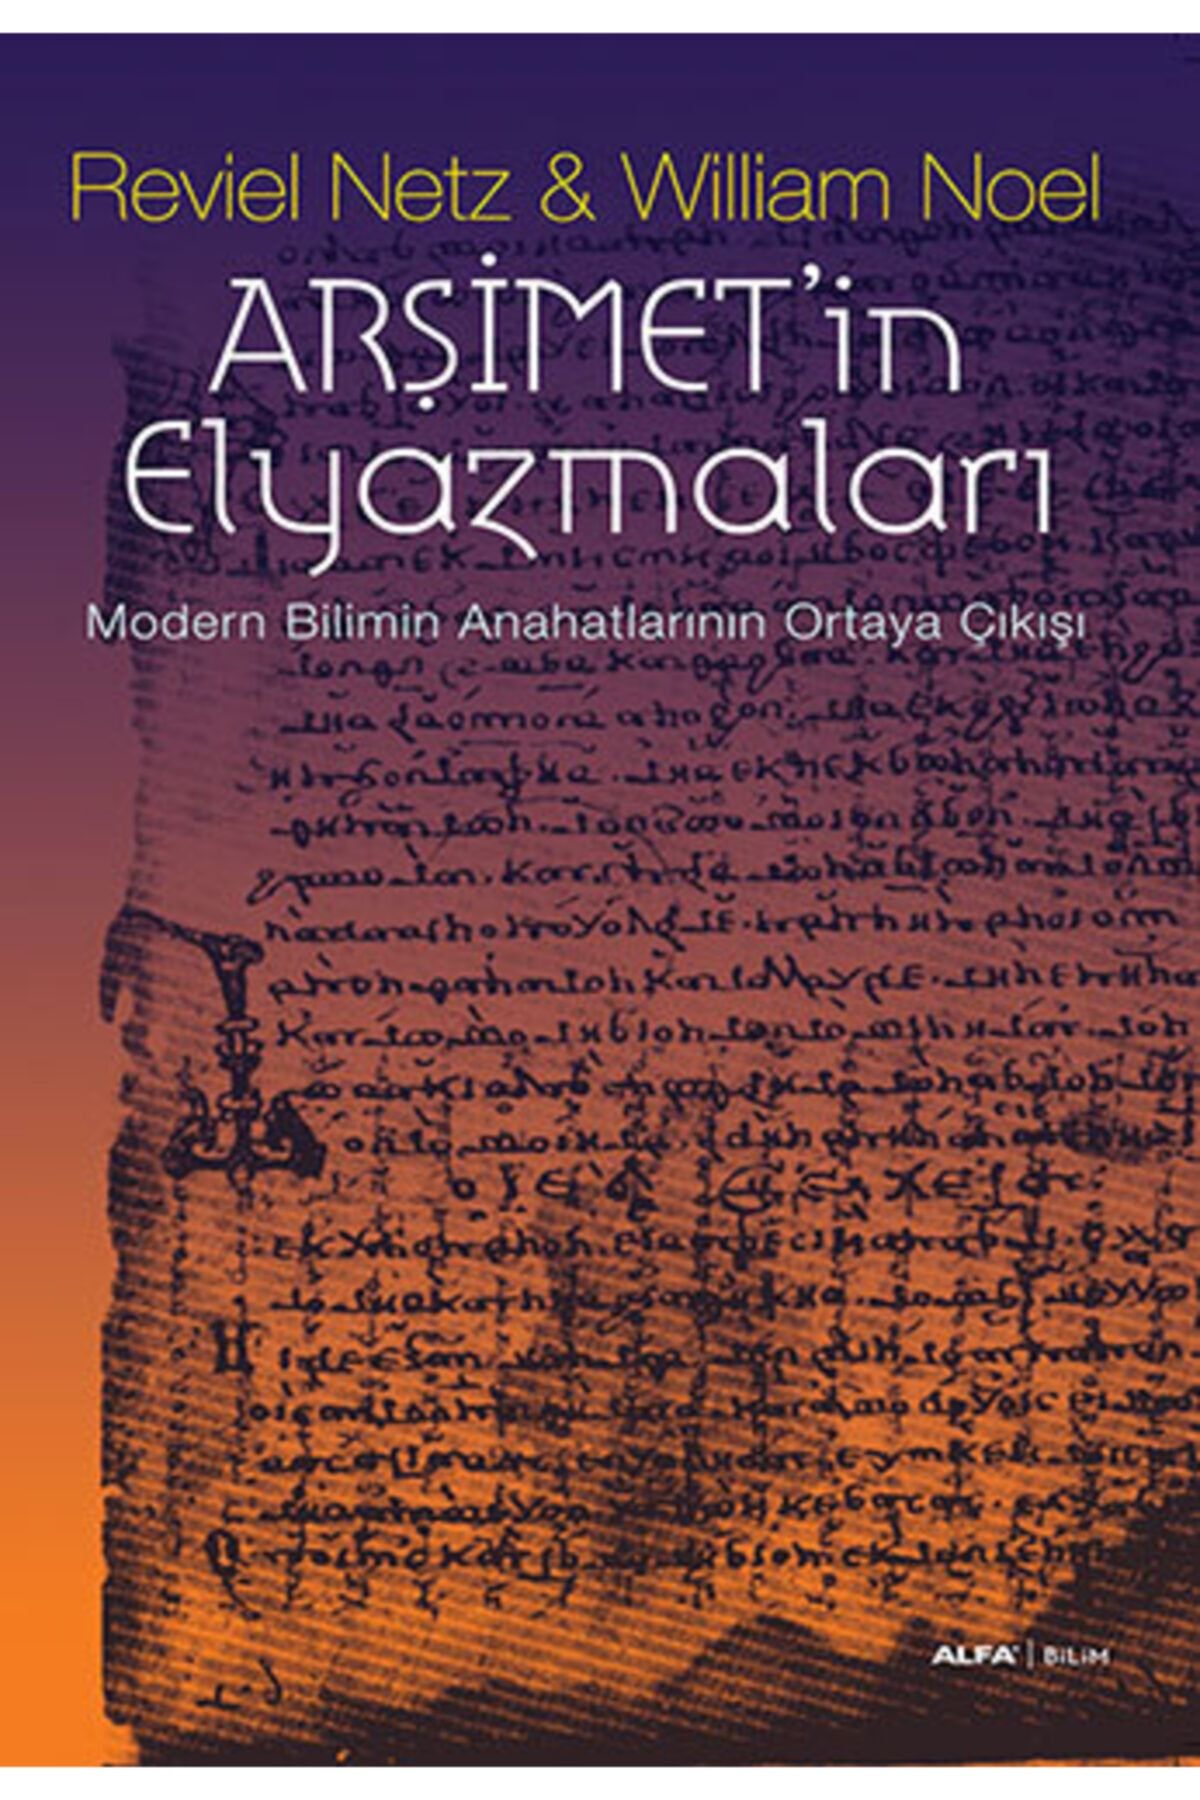 Alfa Yayınları Arşimet'in Elyazmaları Modern Bilimin Anahatlarının Ortaya Çıkış Reviel Netz